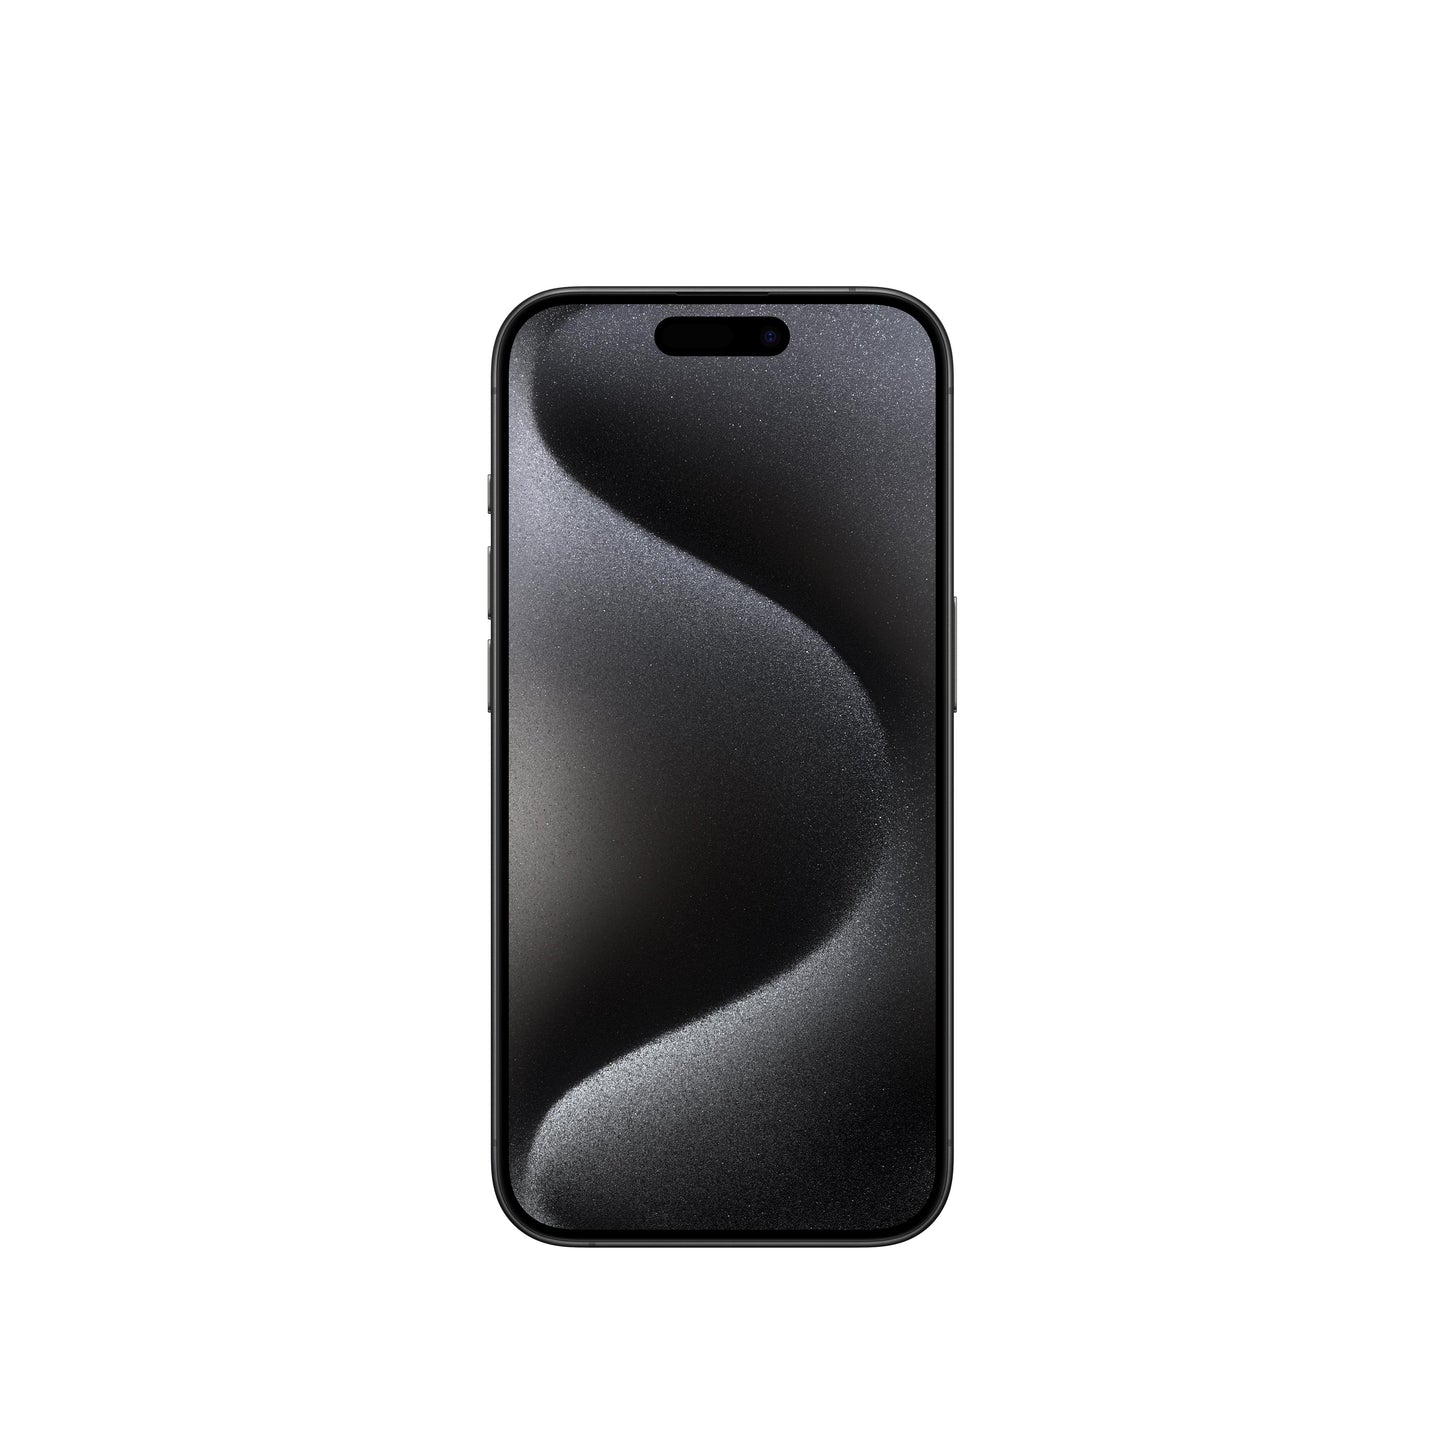 iPhone 15 Pro in  Black Titanium, 128GB Storage. EMI available |Get best offers for iphone 15 pro [variant]  Black Titanium 128GB.